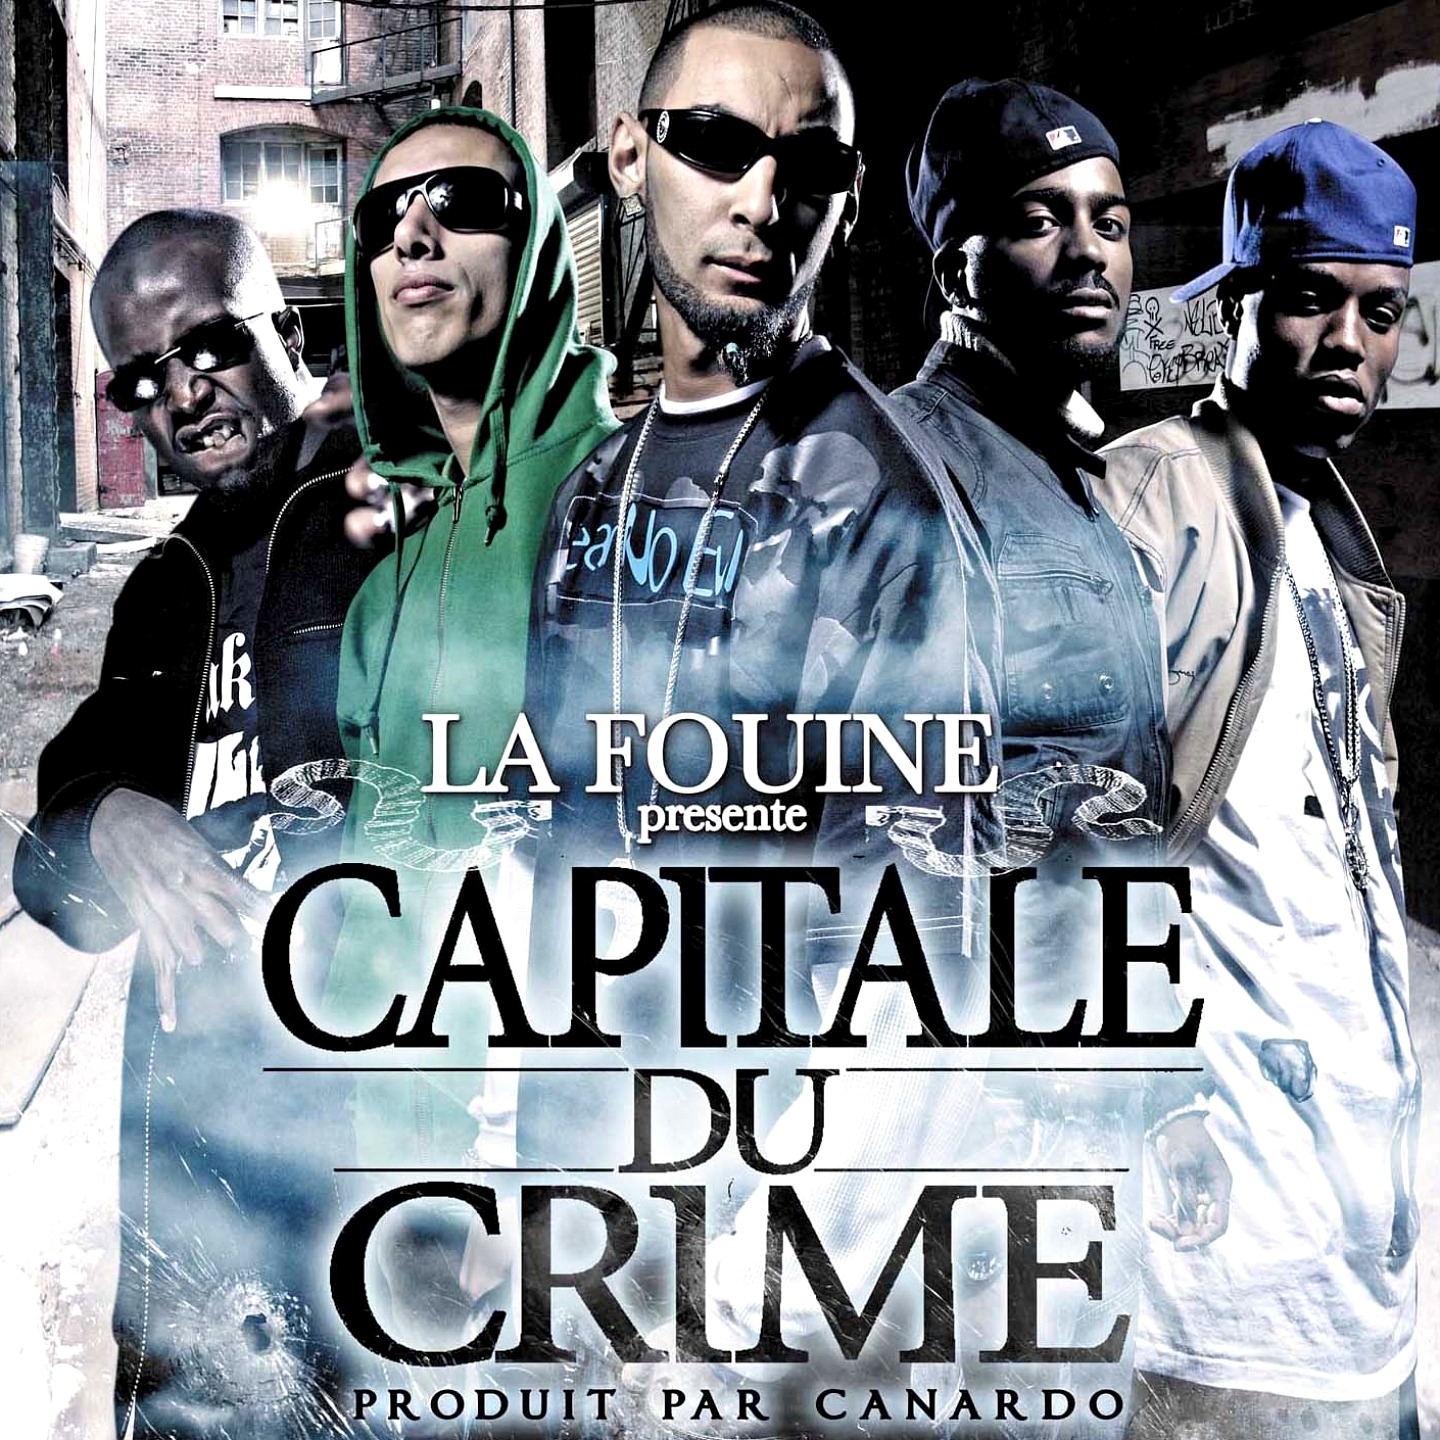 Capitale du crime La Fouine pre sente Capitale du Crime